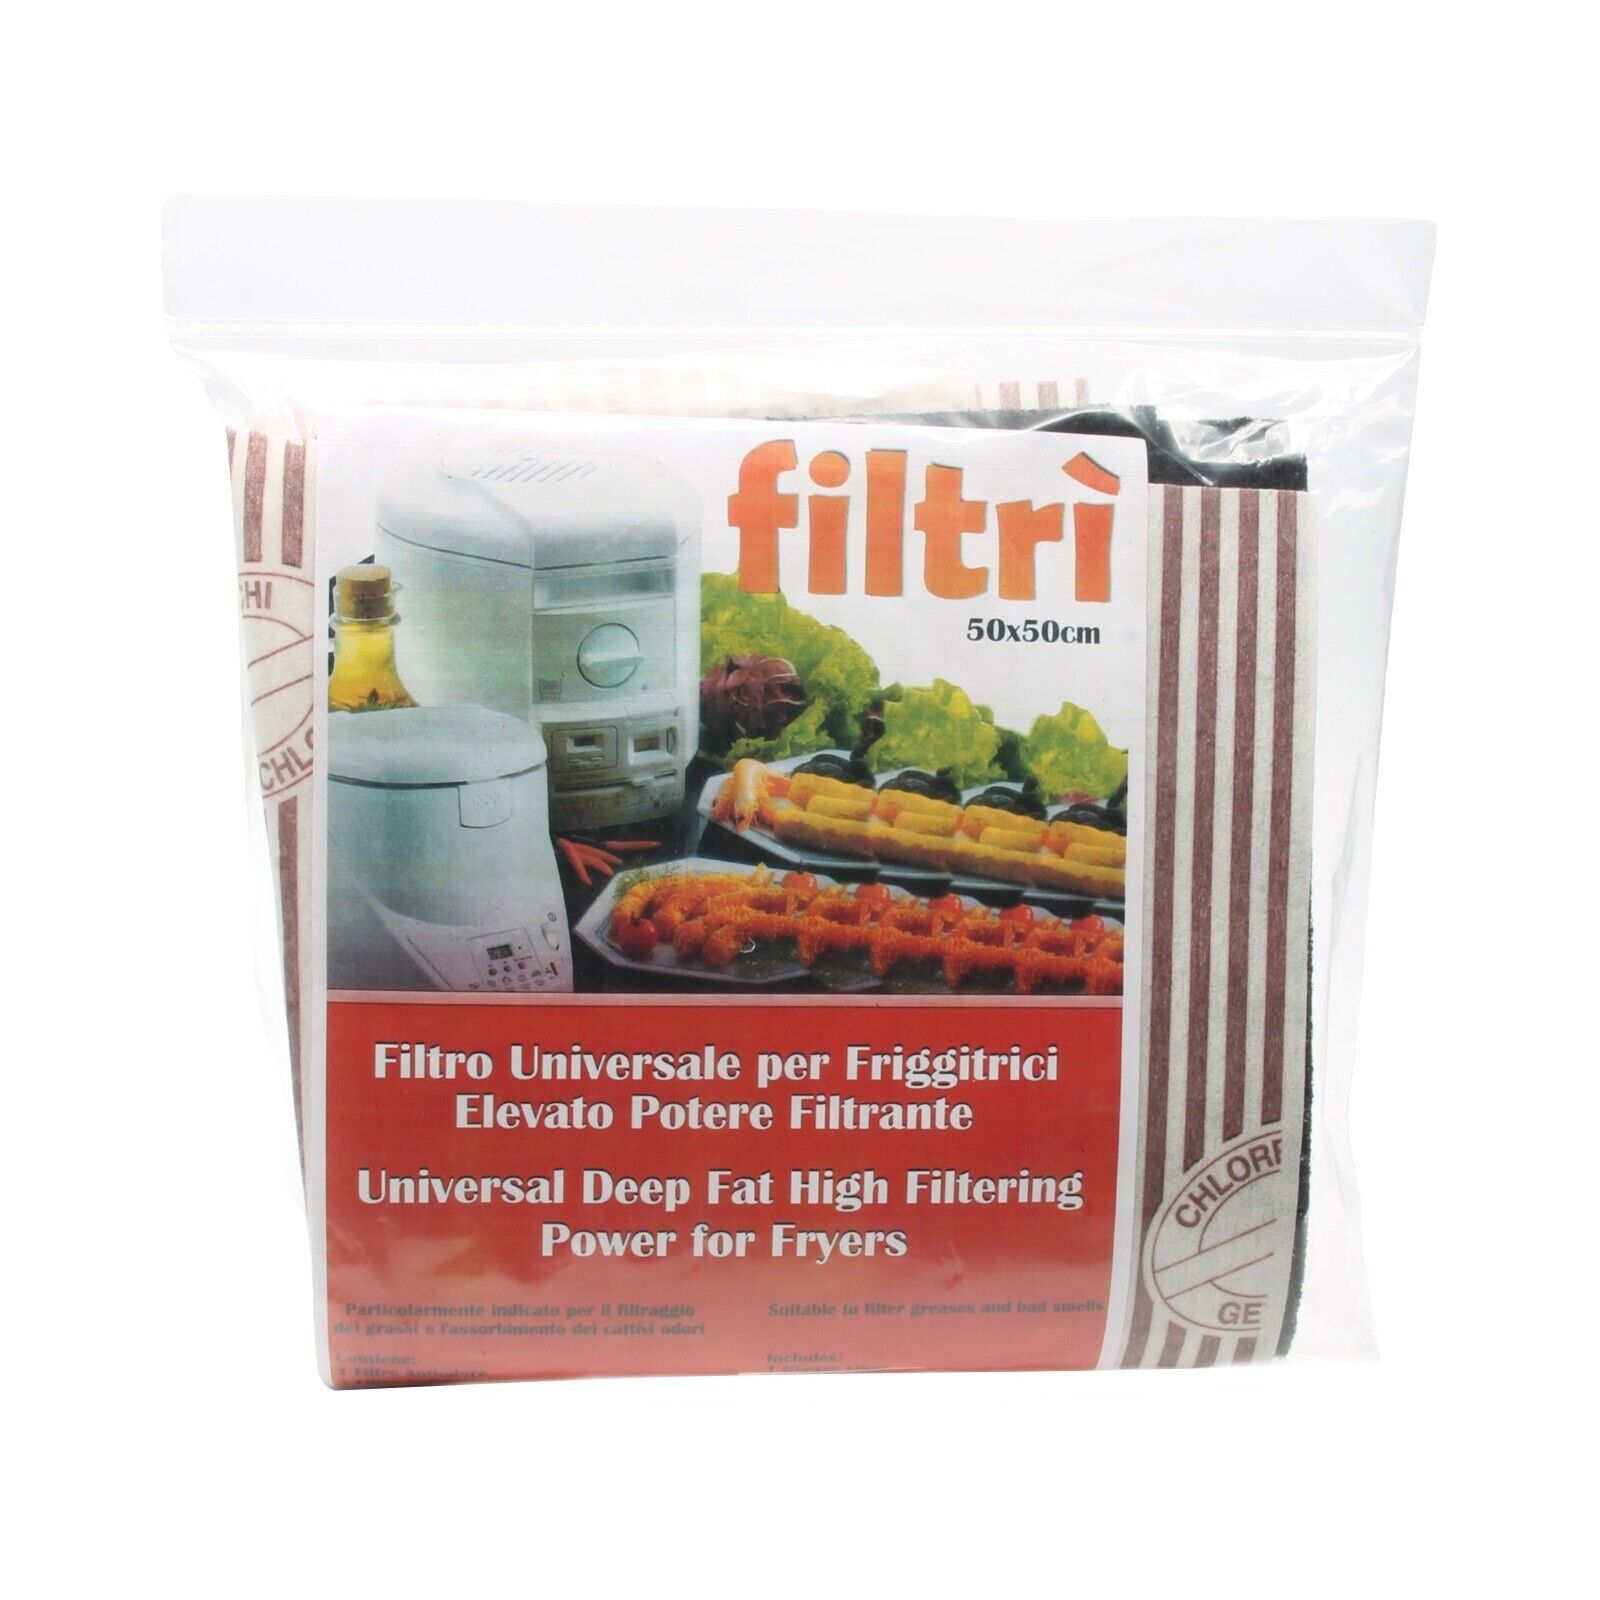 Filtri anti odori antigrasso universali ritagliabili 475x495mm per friggitrice